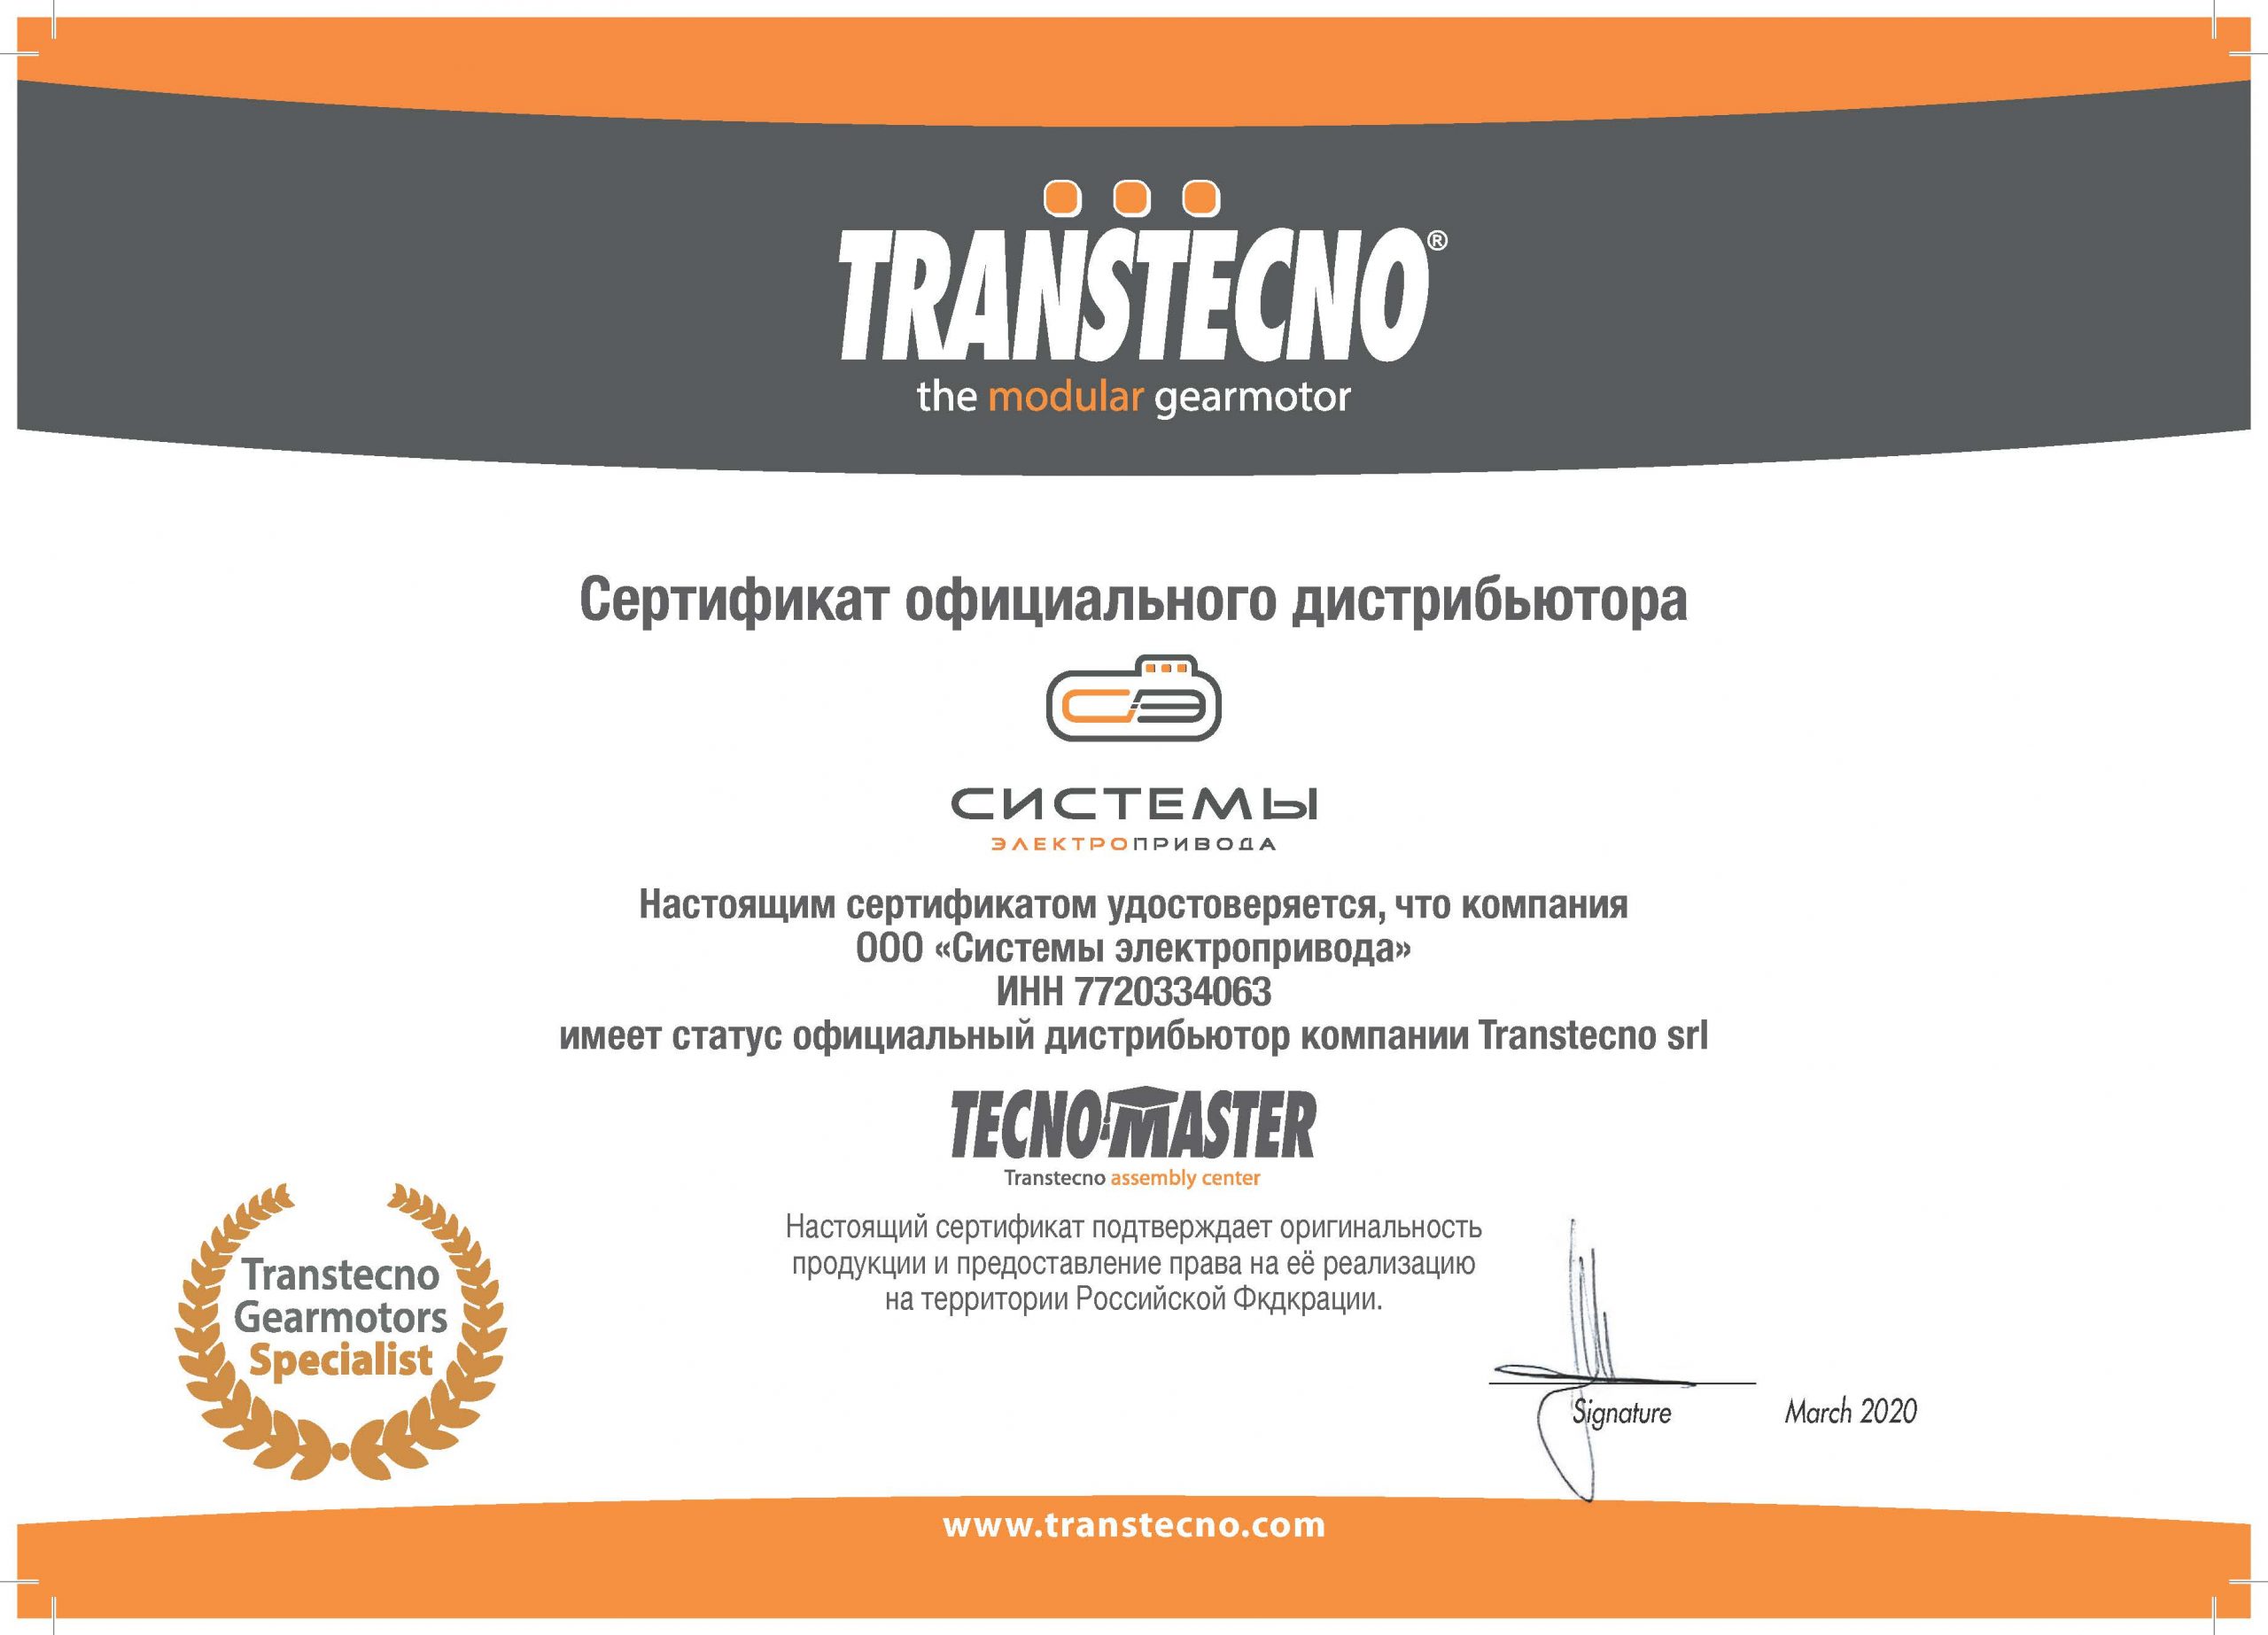 Сертификат официального дистрибьтора.